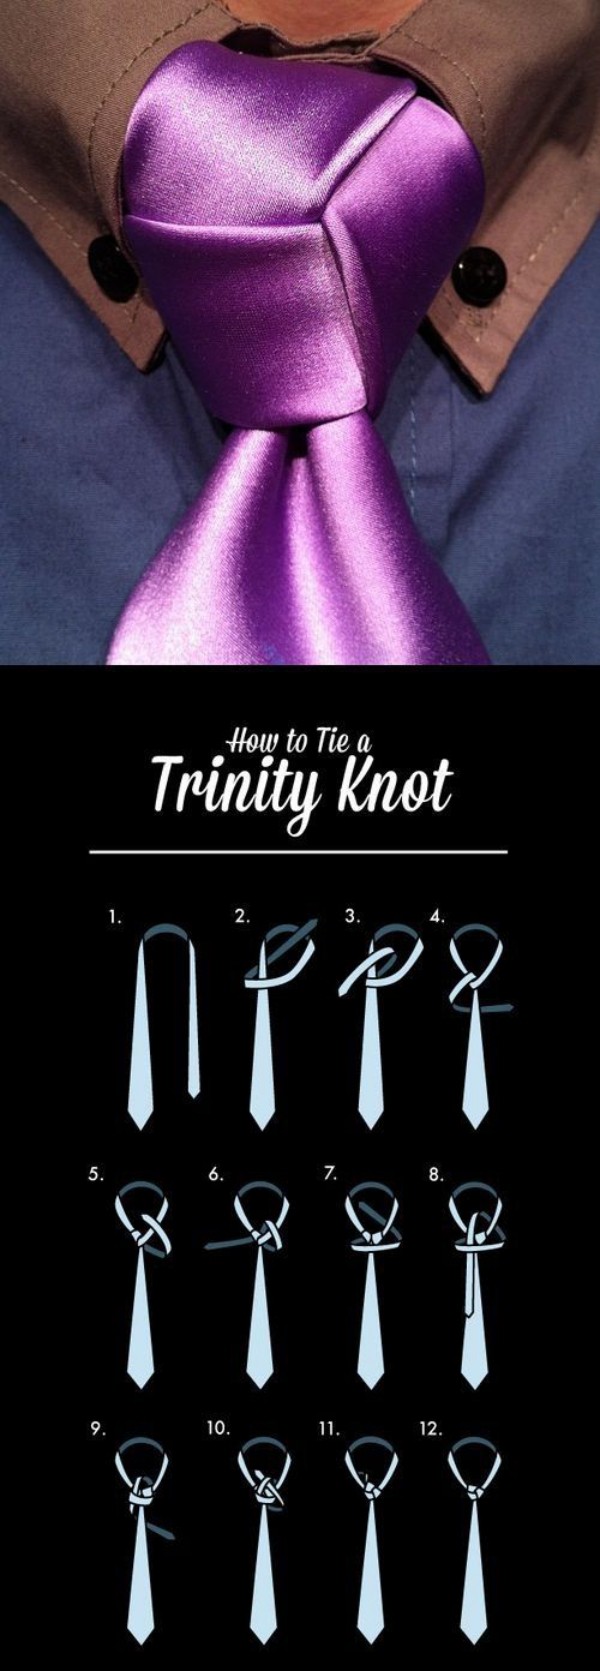 Krawatte binden trinity knoten